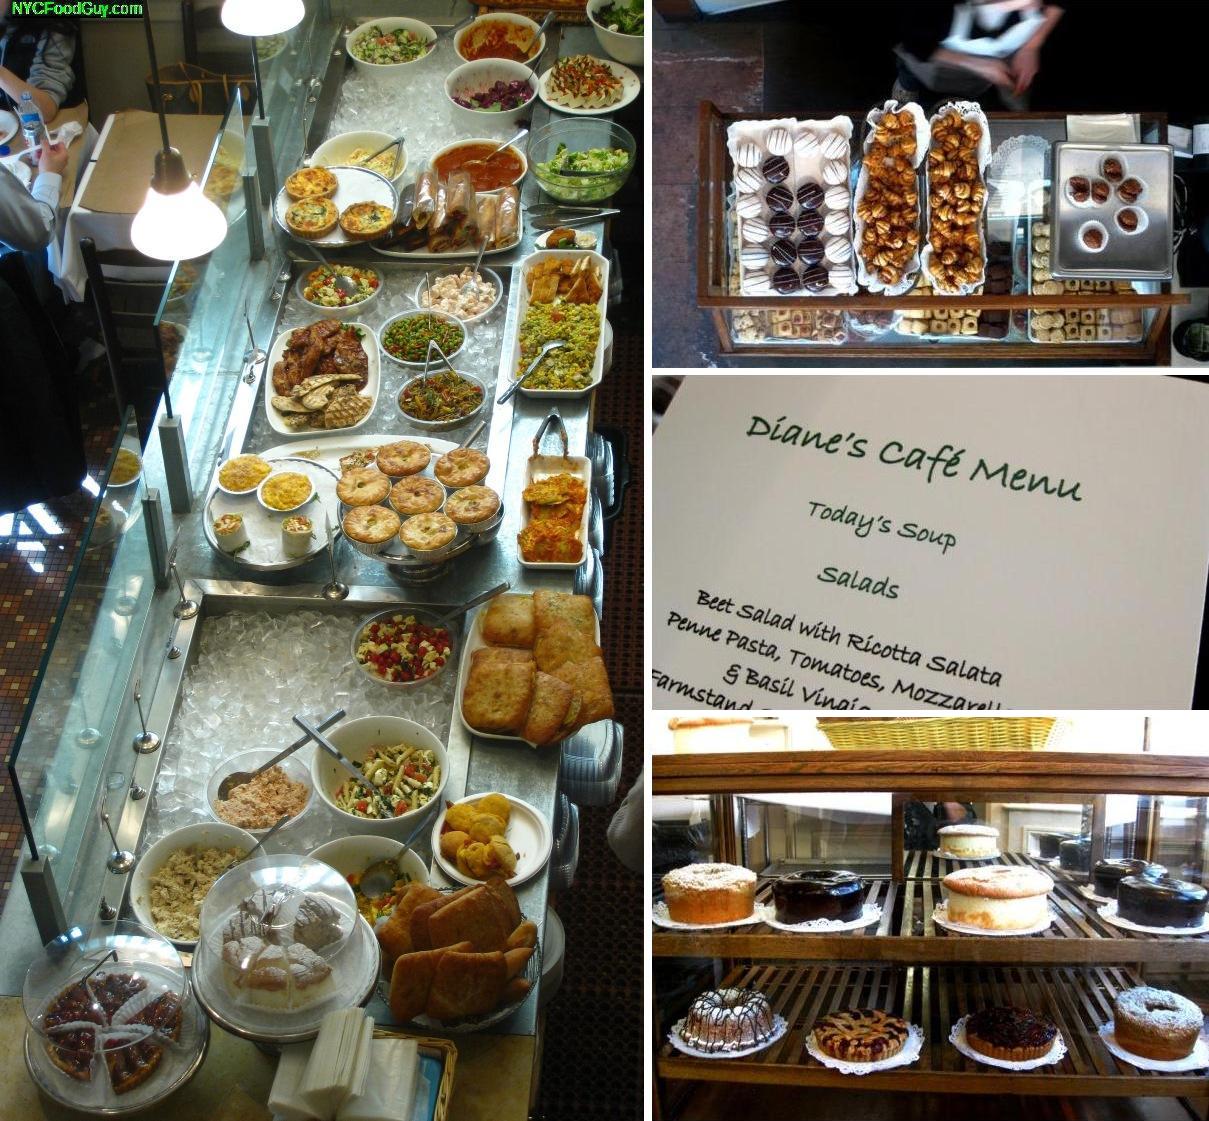 Diane's Bakery Cafe - NYCFoodGuy.com